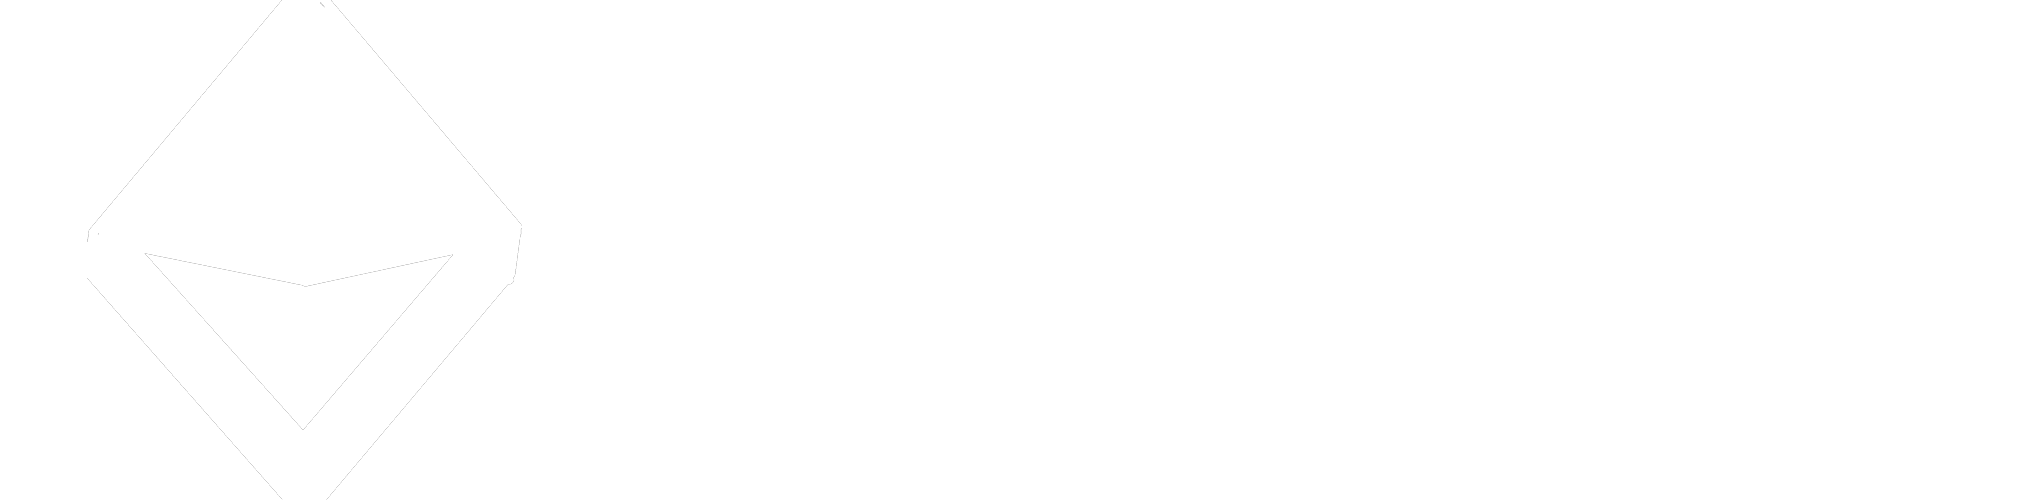 Indit logo